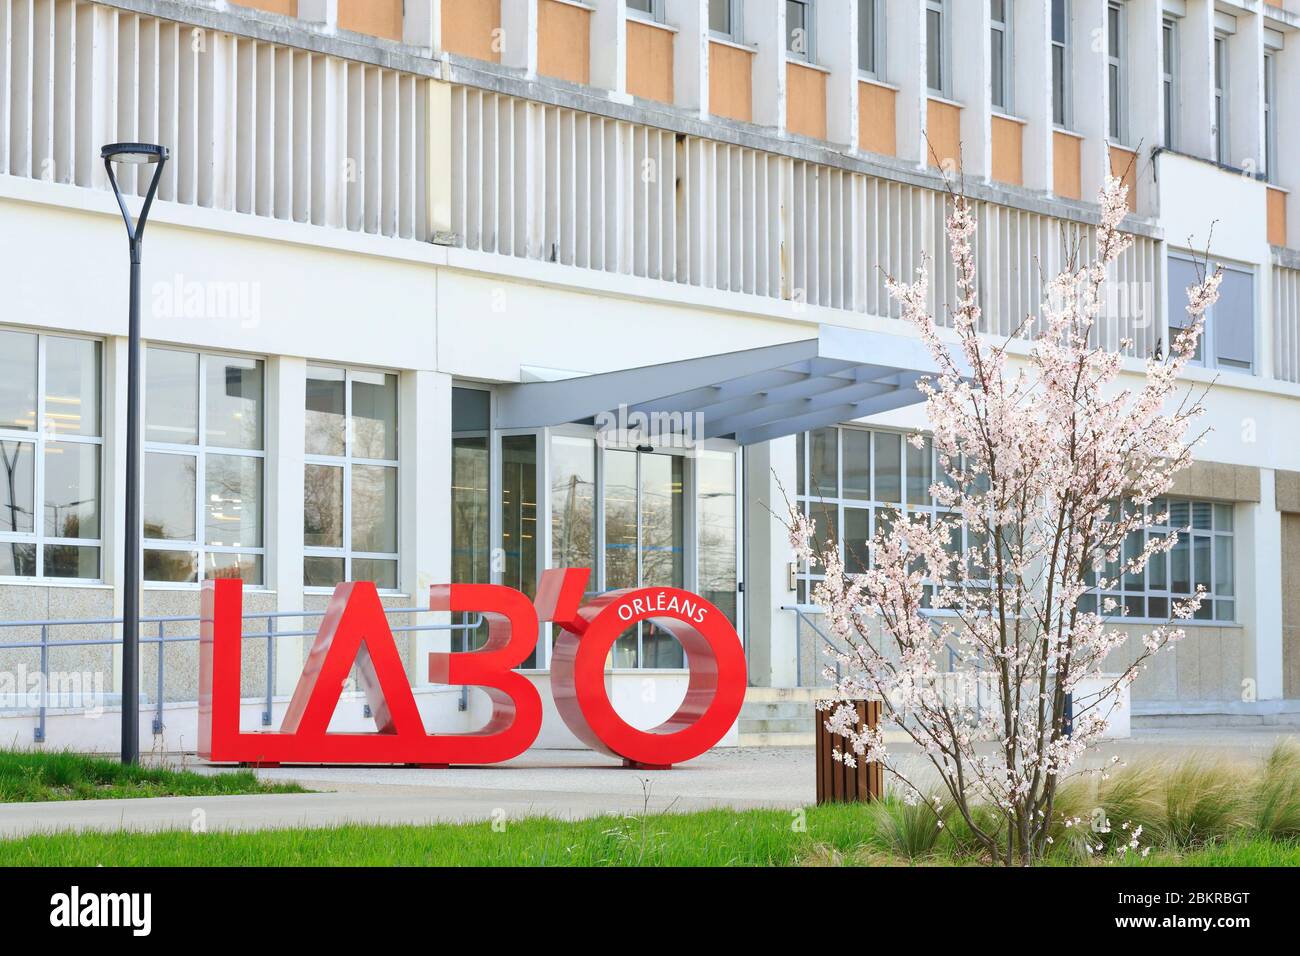 Francia, Loiret, Orleans, incubadora de negocios Lab'o instalada desde 2016 en una antigua fábrica farmacéutica (1953) diseñada por el arquitecto Jean Tschumi Foto de stock